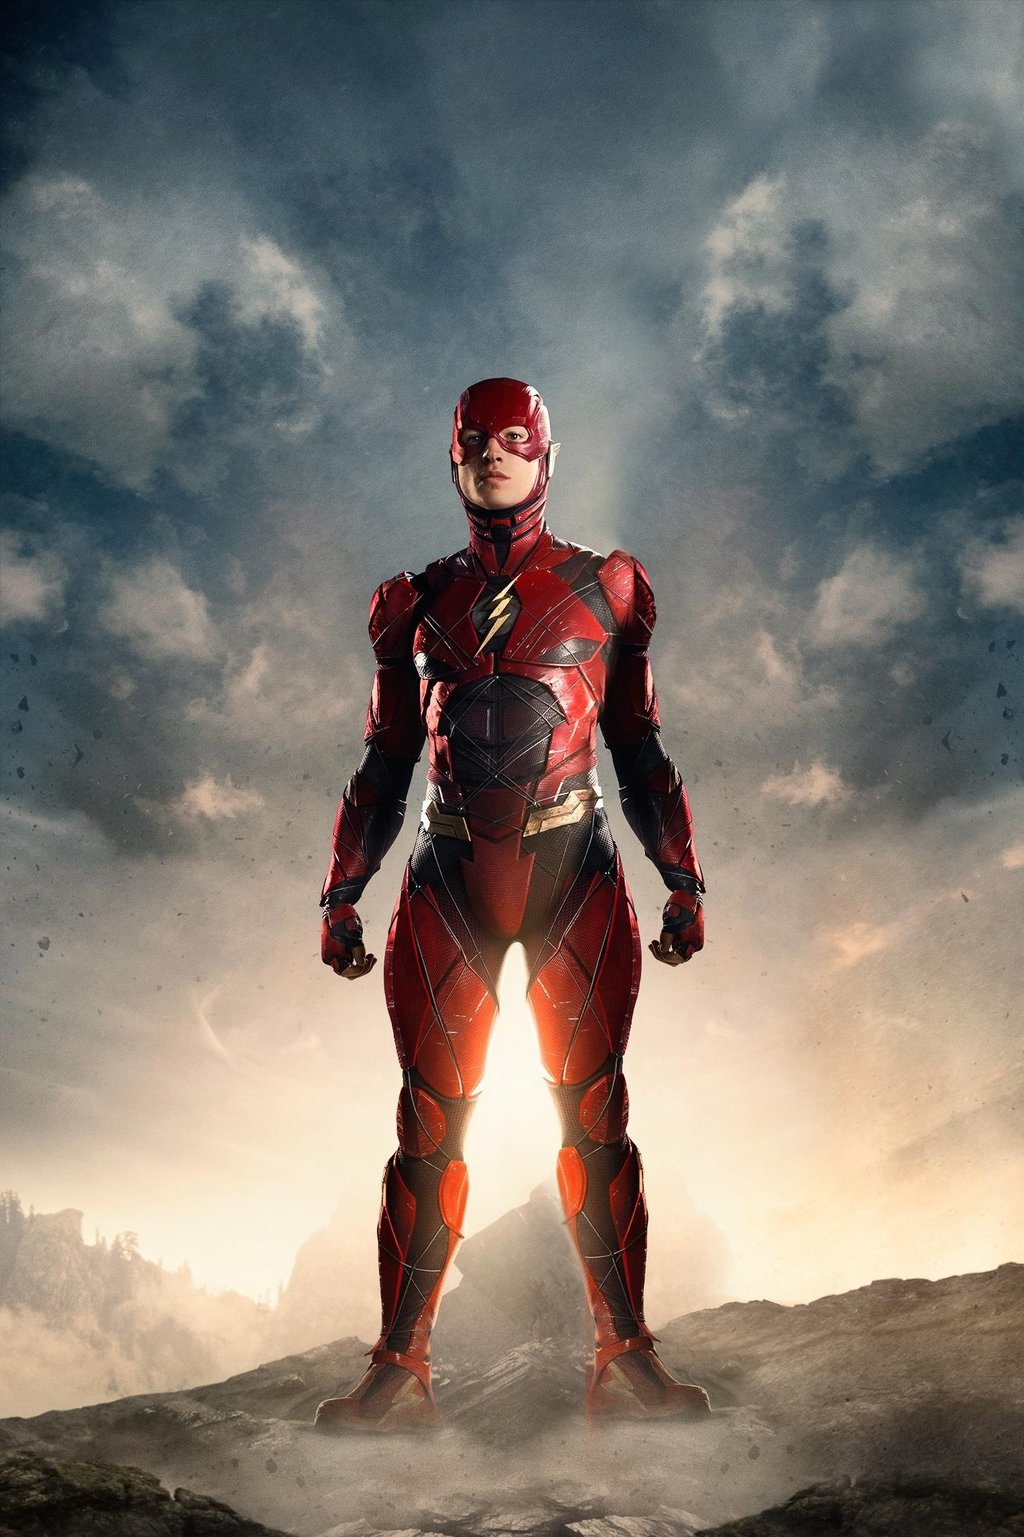 ‘Watchmen’ star Billy Crudup cast as Henry Allen in ‘The Flash’ film